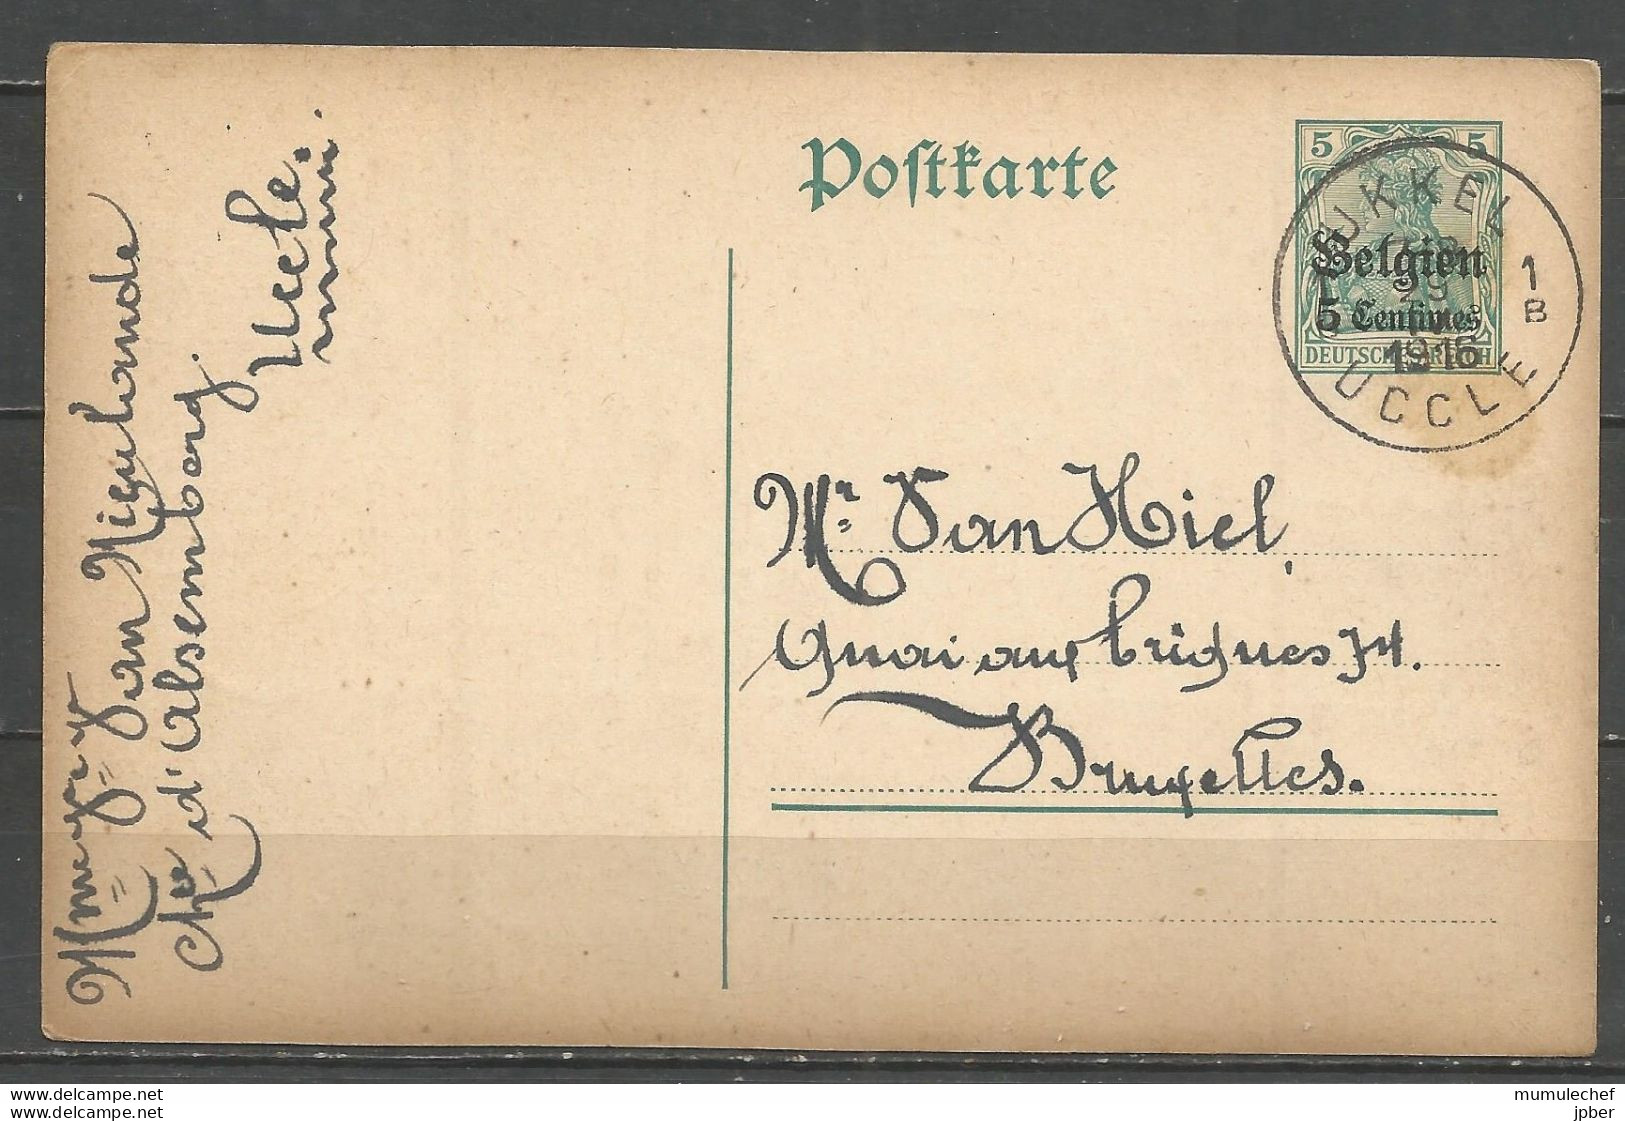 Belgique - Occupation Allemande - Carte Postale Type 1 (OC2) De UCCLE Sans Cachet Contôle Militaire - Deutsche Besatzung